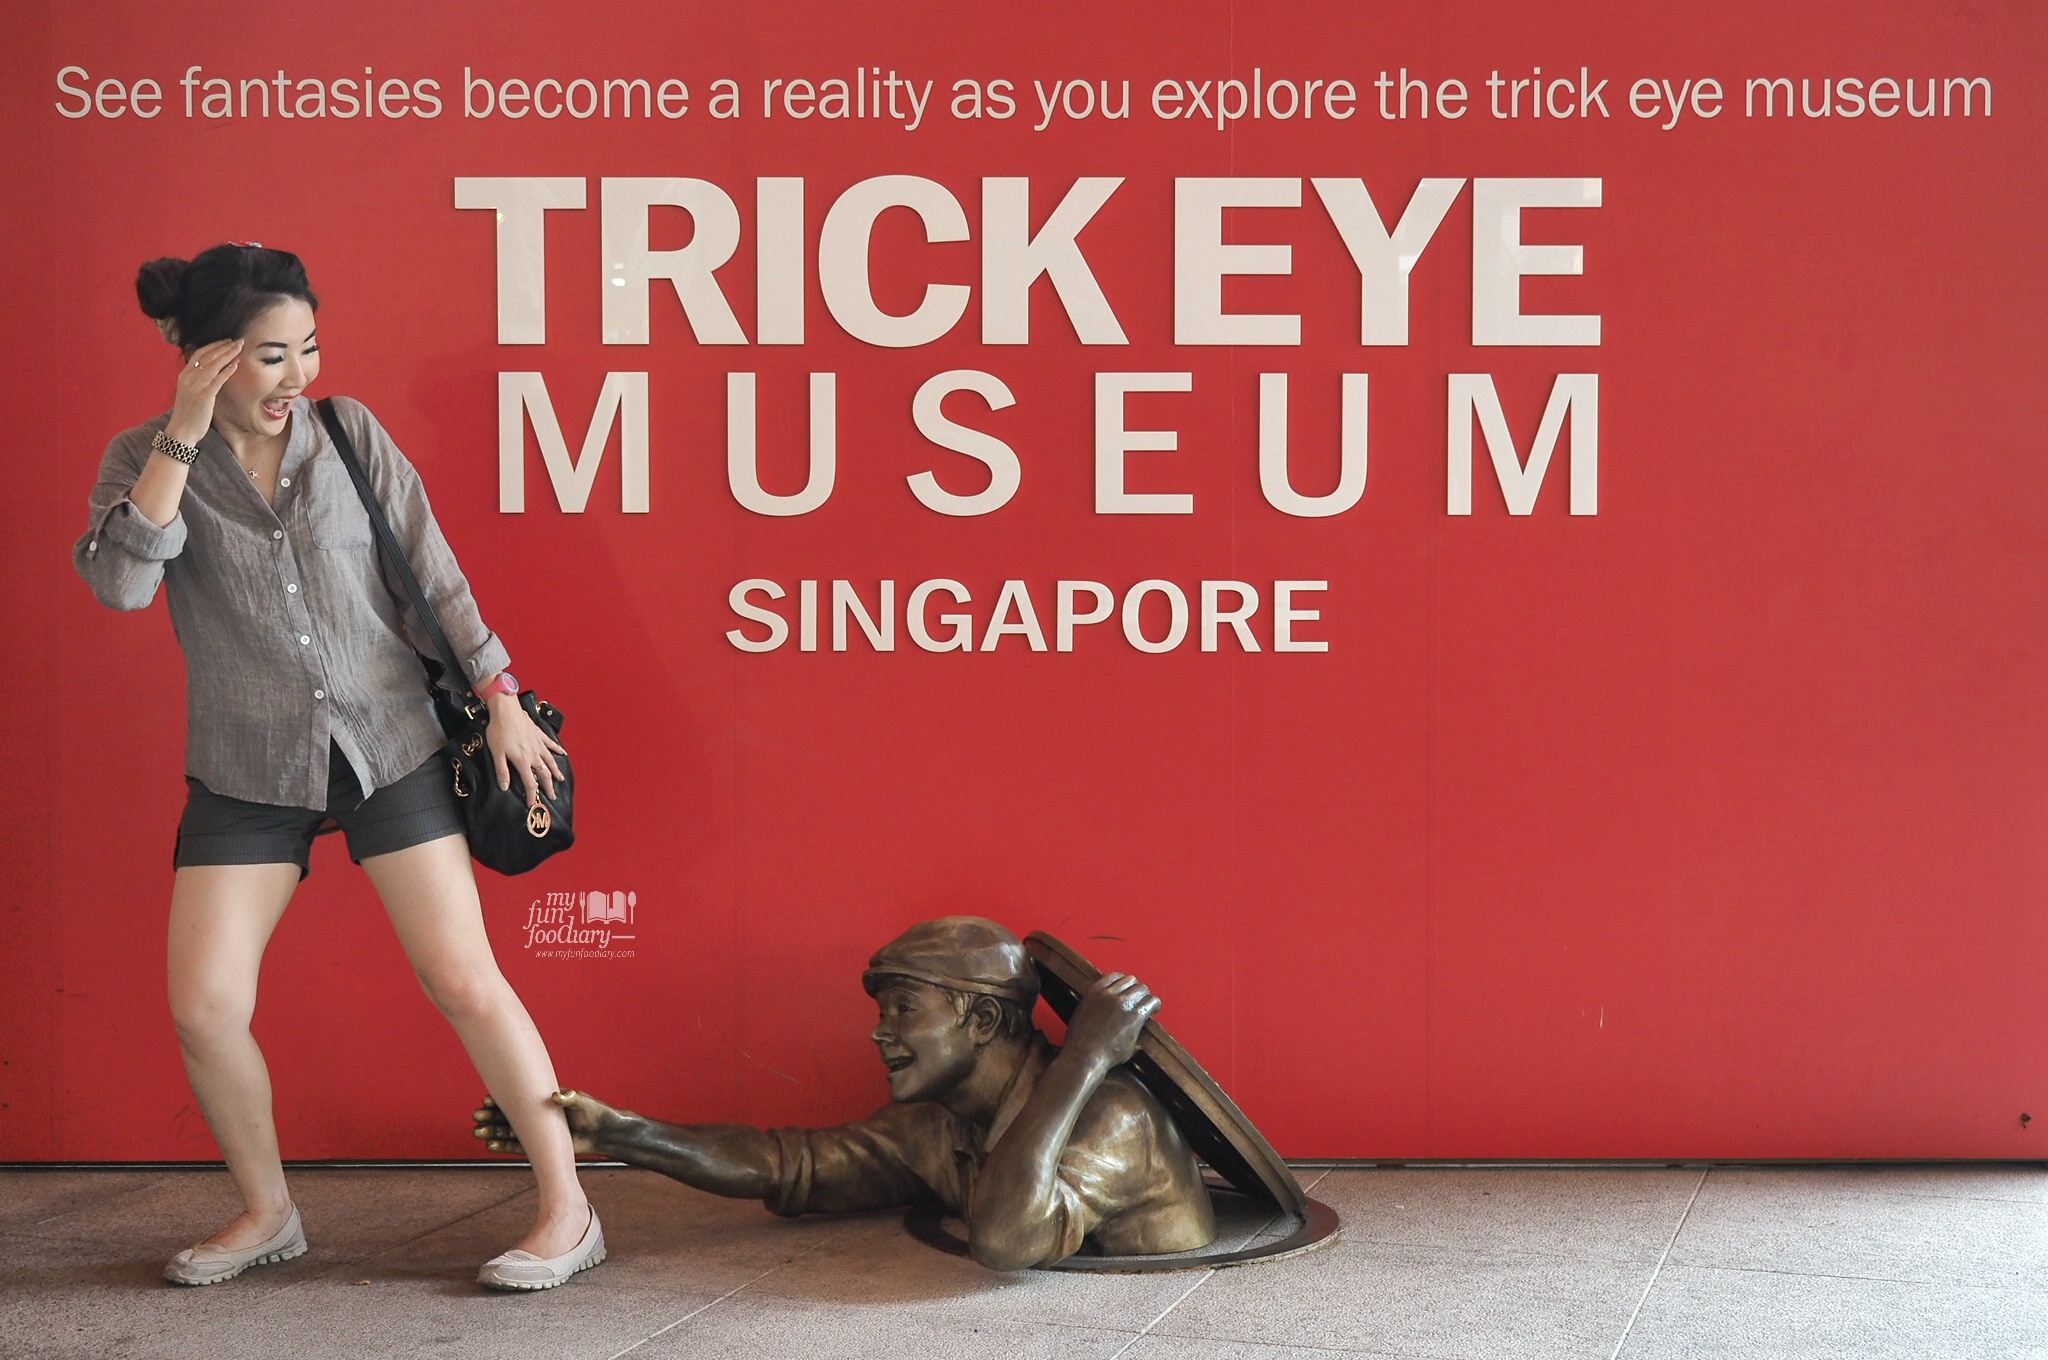 Trick Eye Museum Singapore by Myfunfoodiary